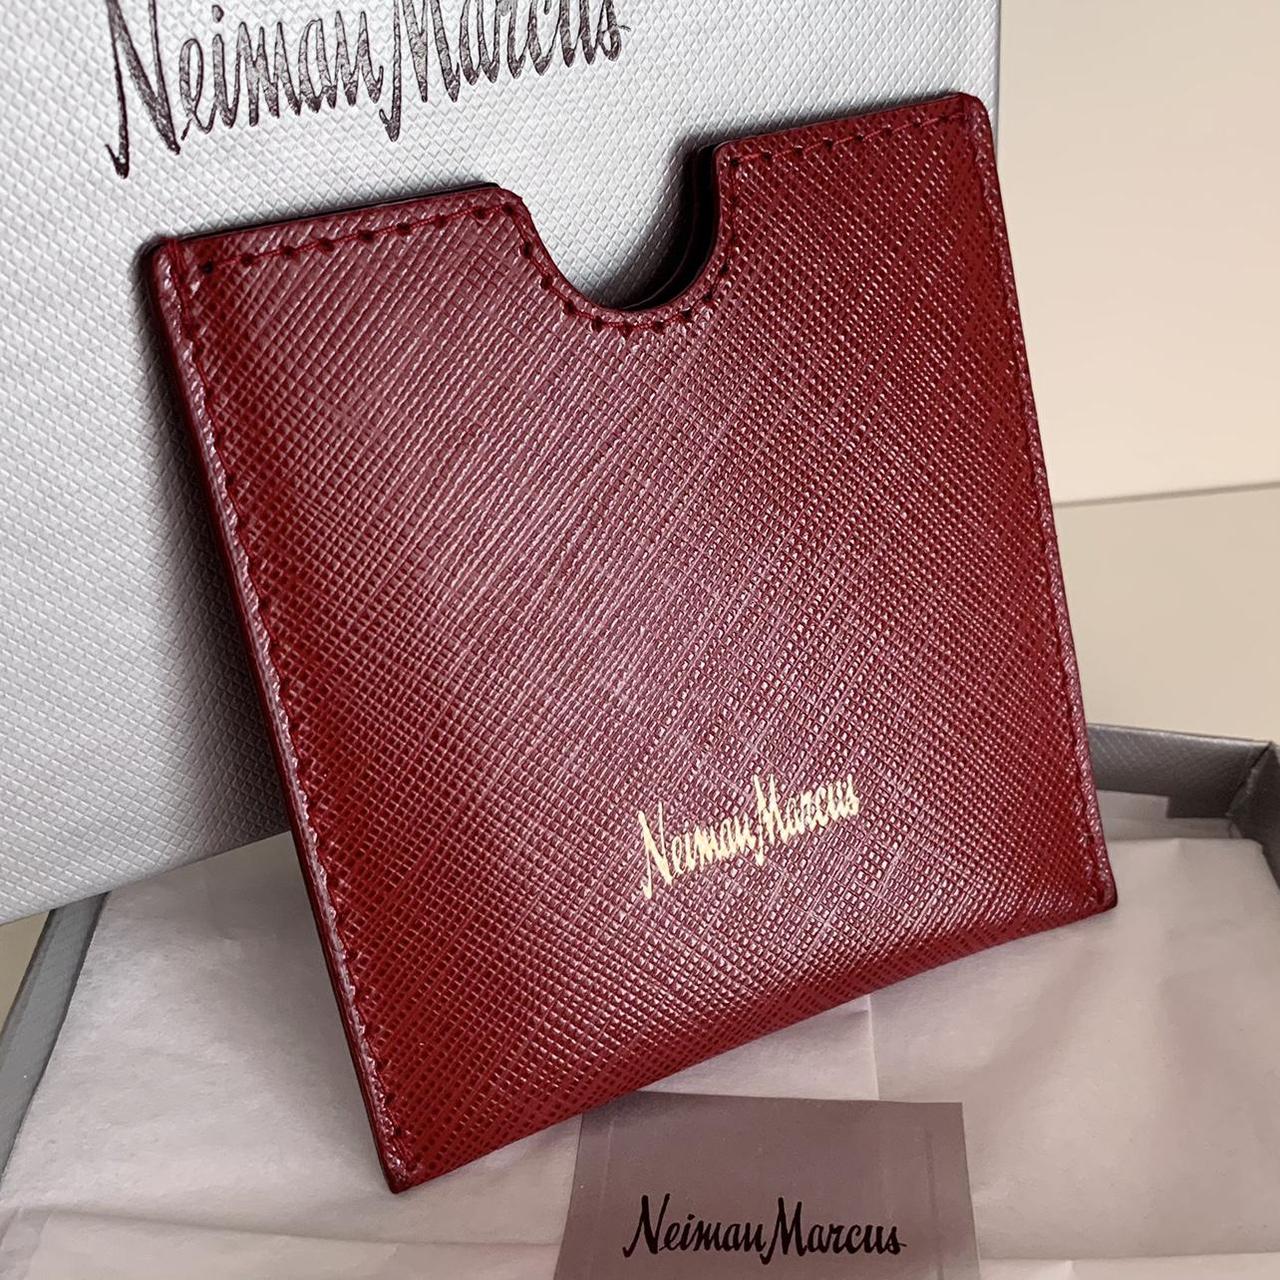 Neiman Marcus Women's Wallet